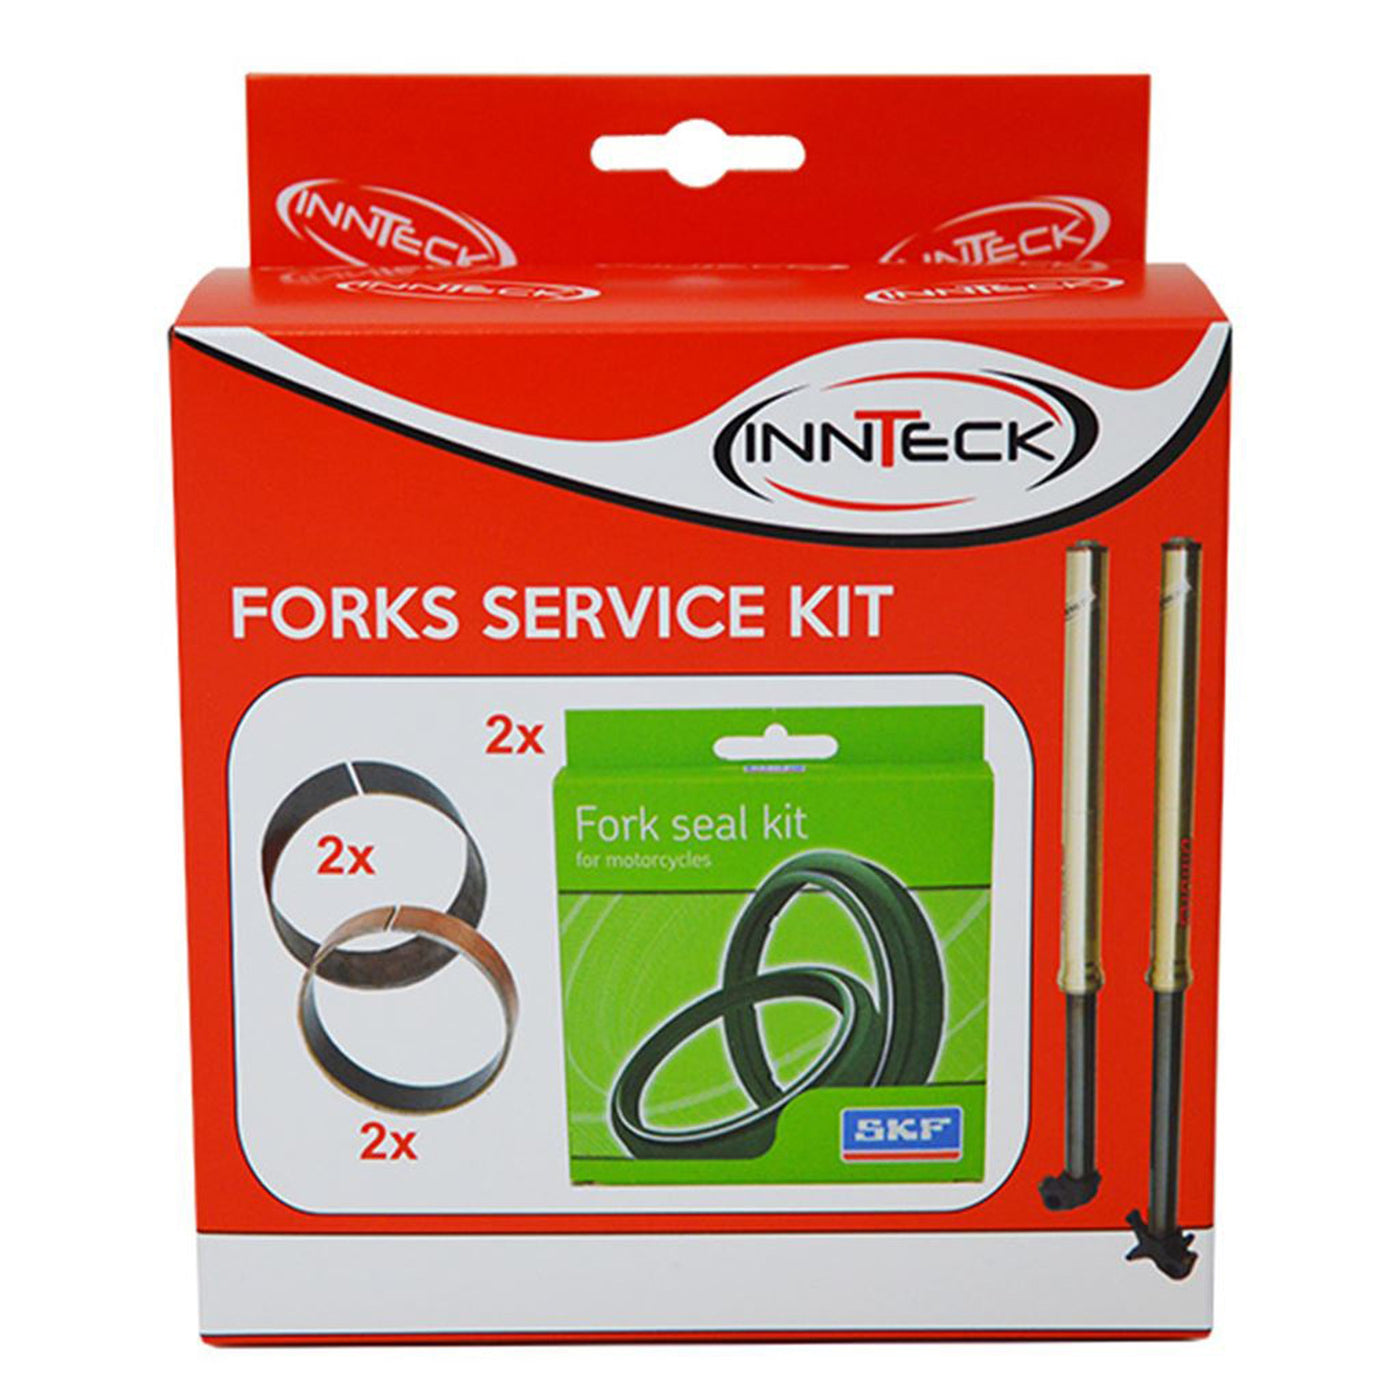 SKF Fork Service Kit SHOWA